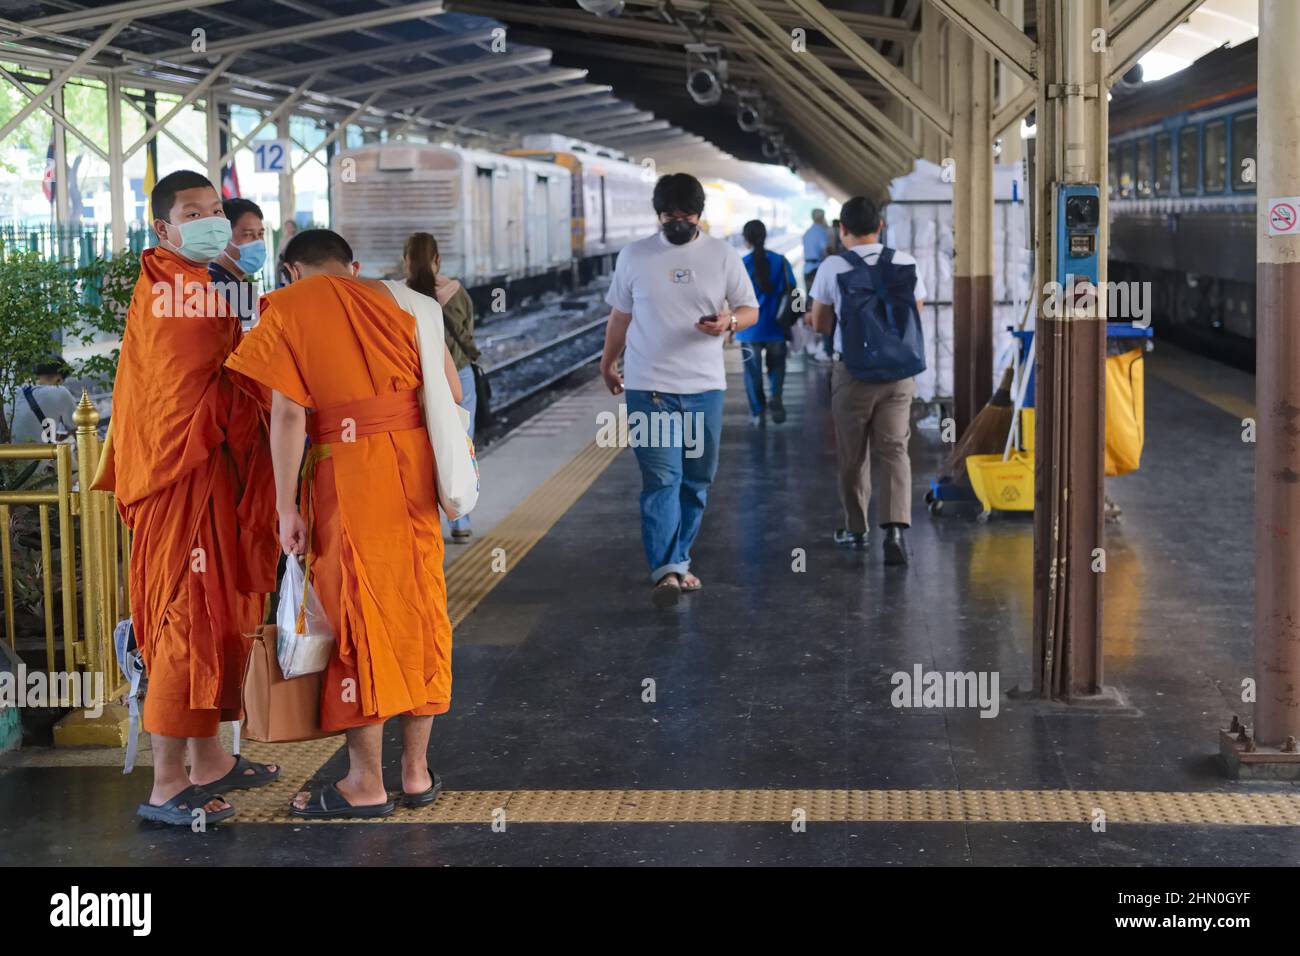 Young Thai Buddhist monks waiting for their train at Hualamphong (Hua Lamphong) Station in Bangkok, Thailand Stock Photo